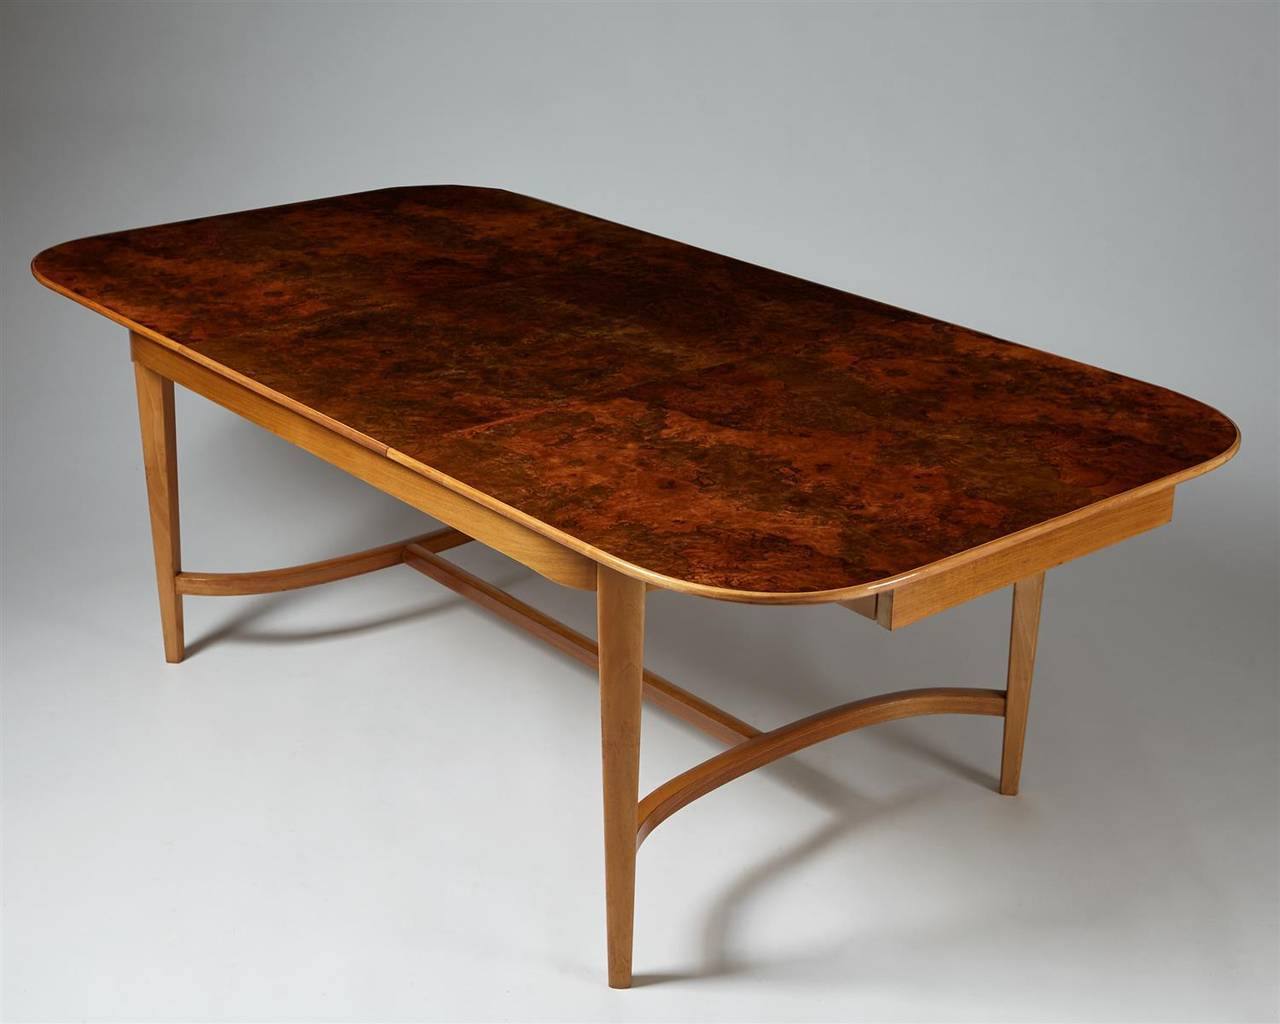 Scandinavian Modern Dining Table Designed by Josef Frank for Svenskt Tenn, Sweden 1950s